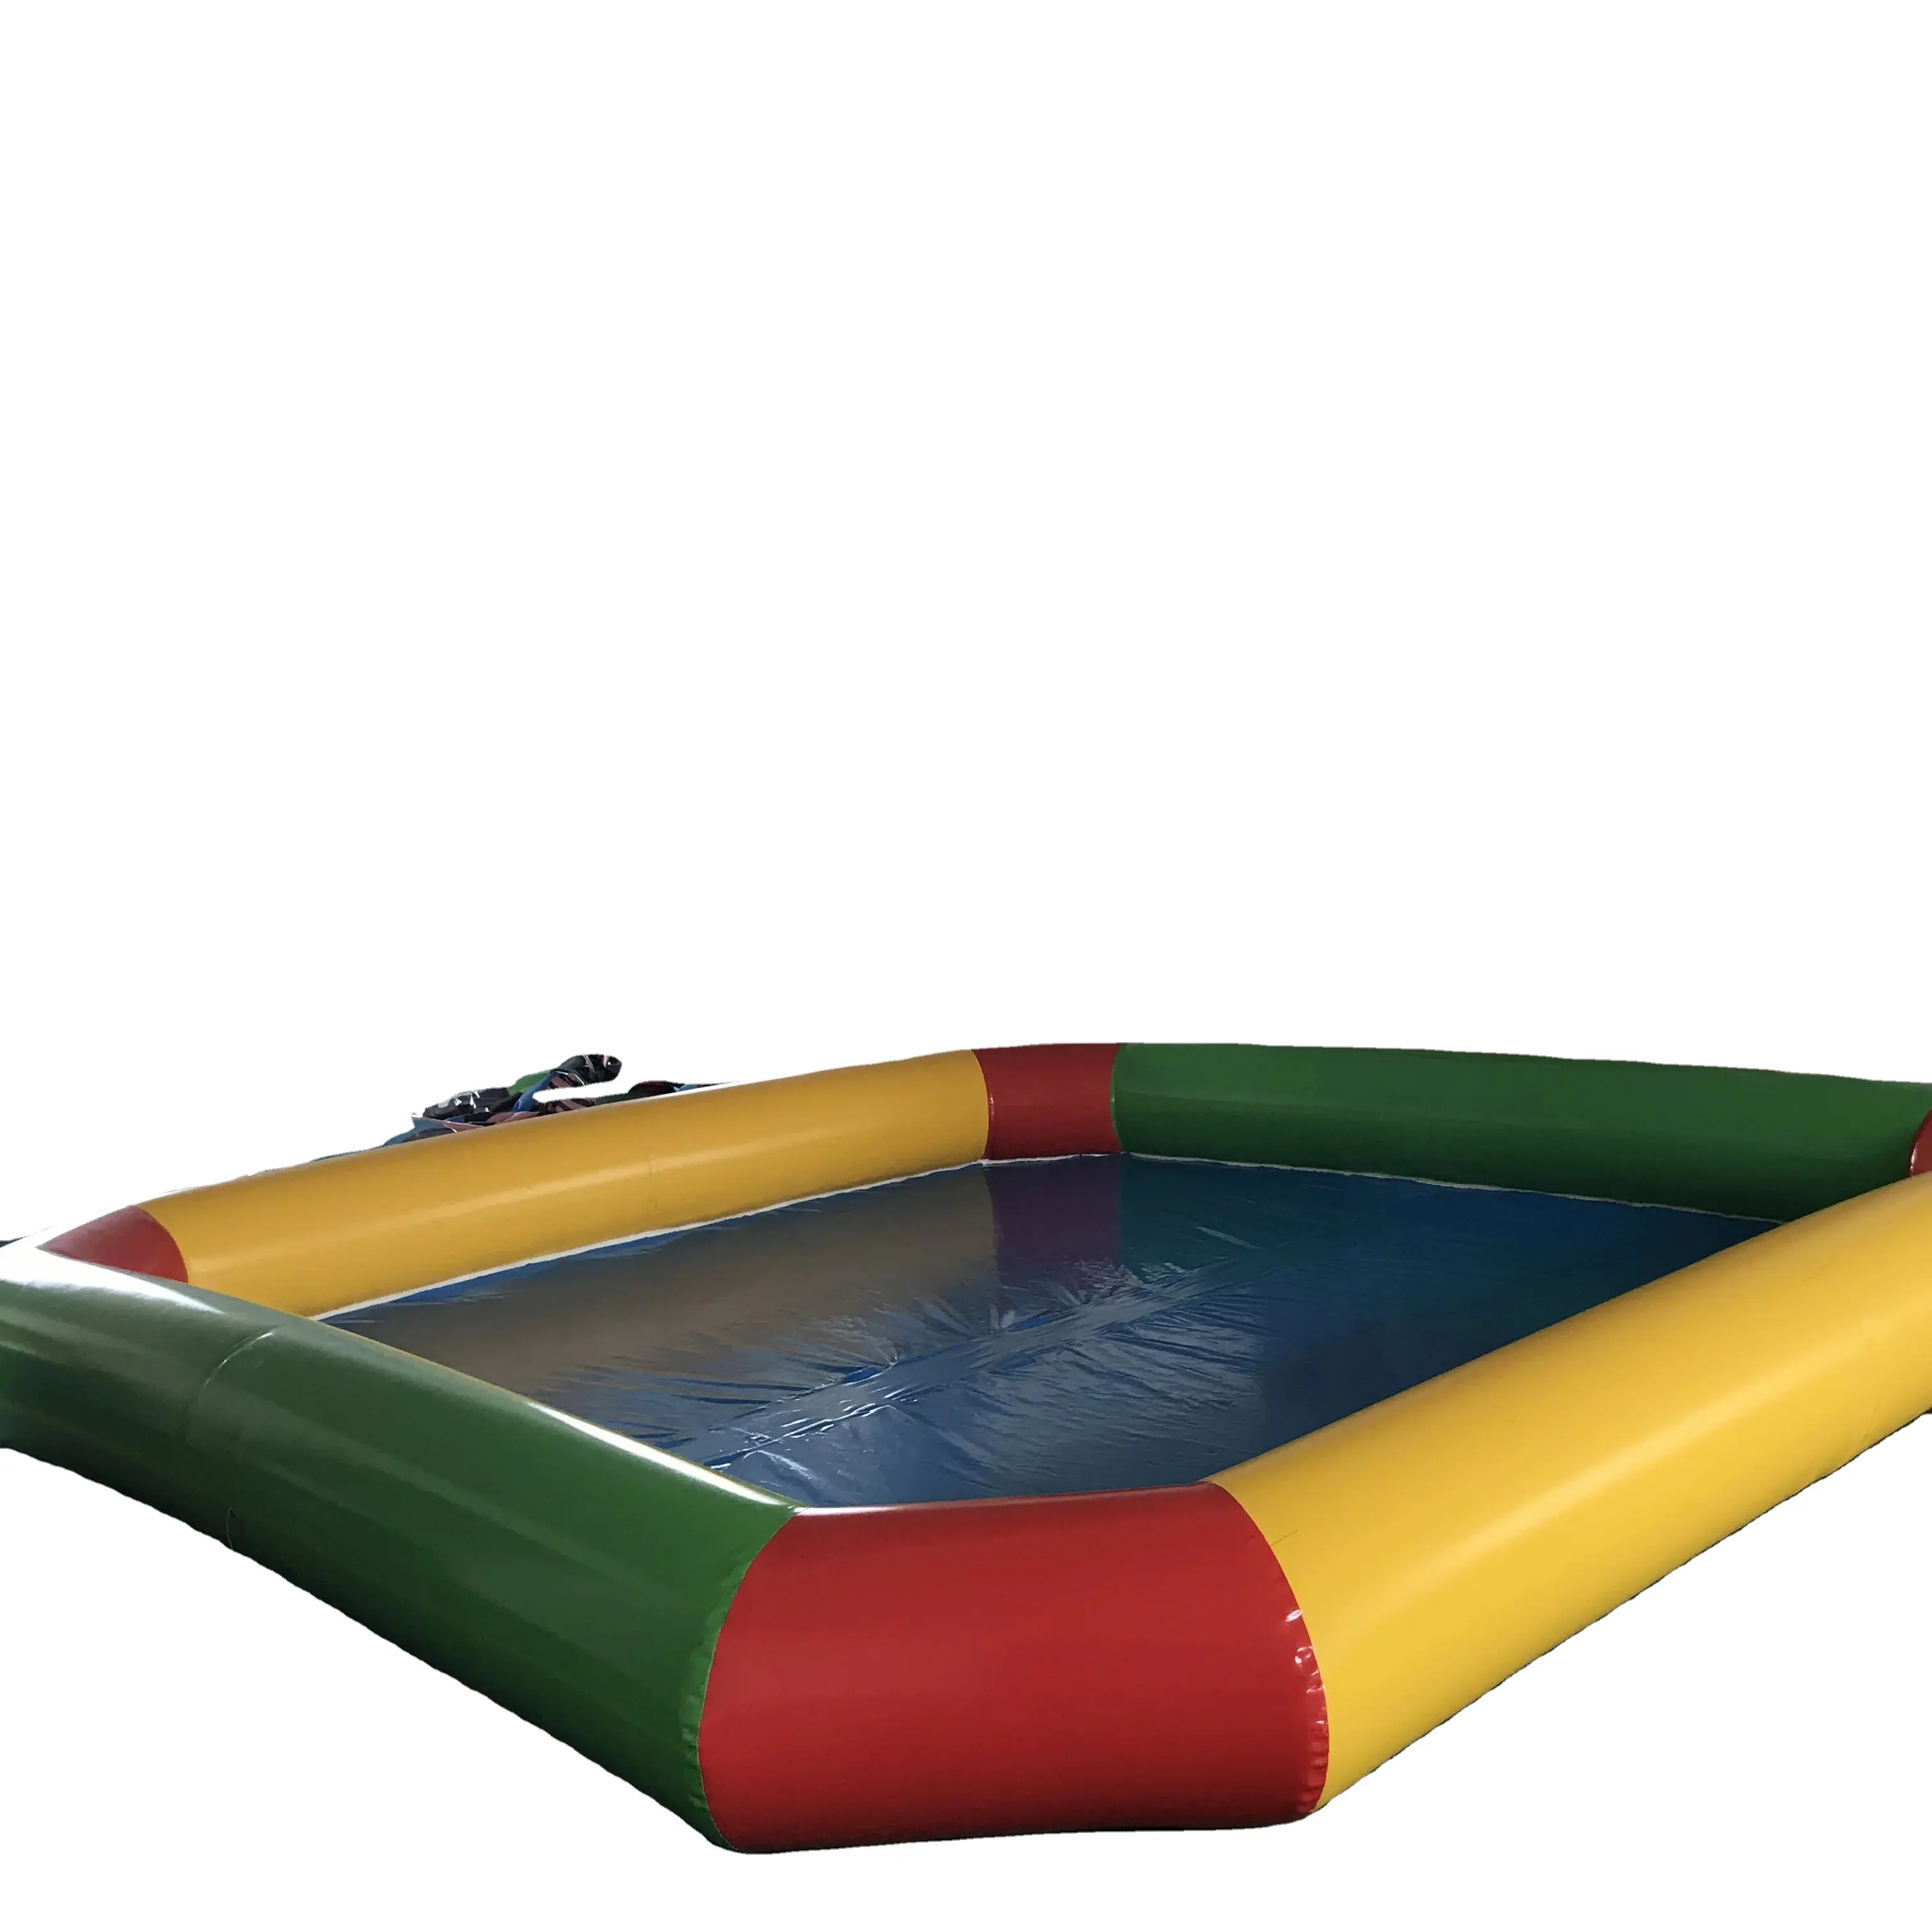 Ce mới thương mại thổi lên trượt nước Inflatable với hồ bơi cho trẻ em/bơi bơm hơi hồ bơi/Hồ bơi cho người lớn